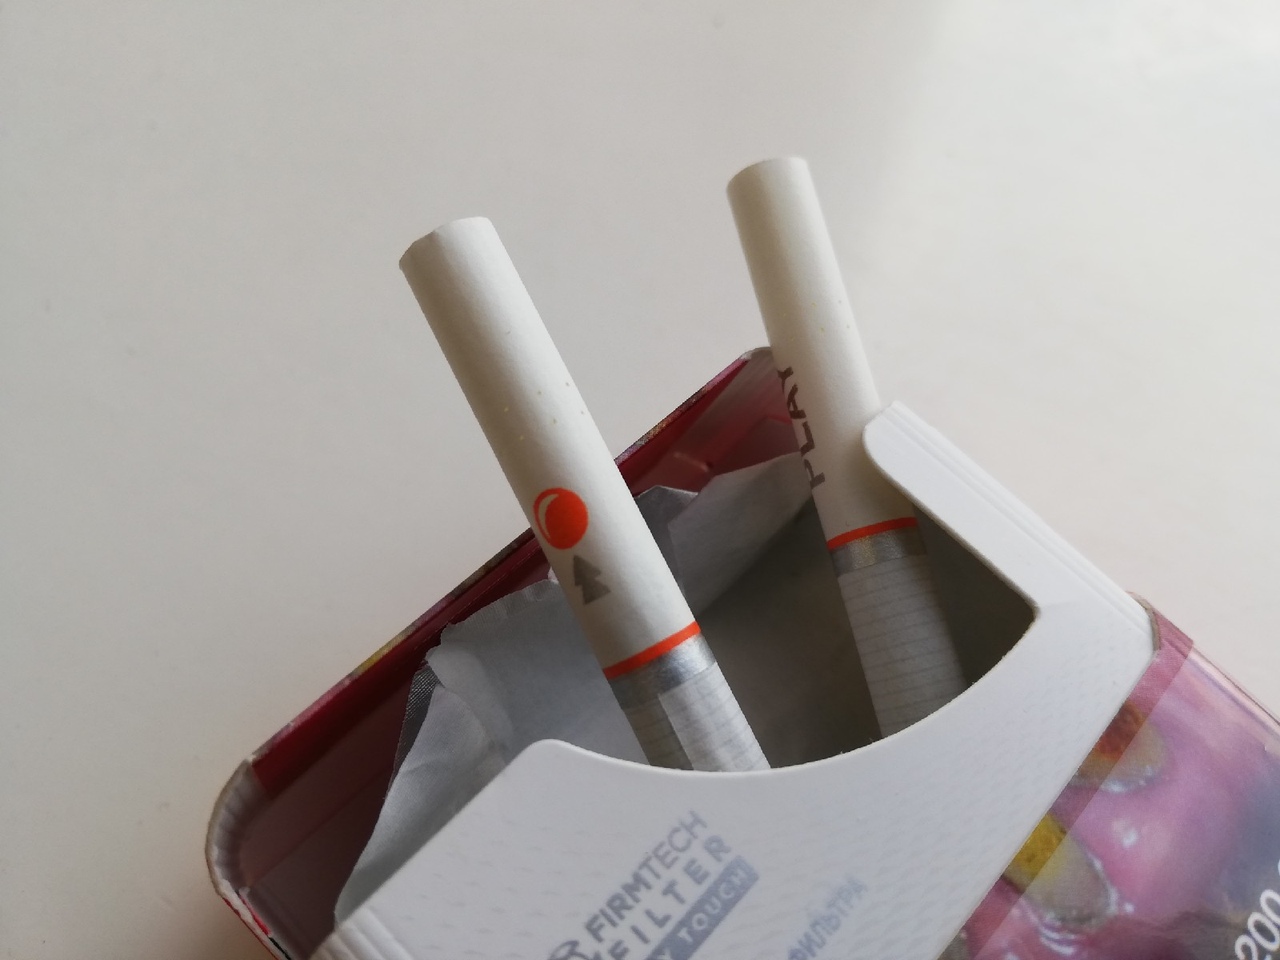 На туляка завели дело за незаконную торговлю сигаретами